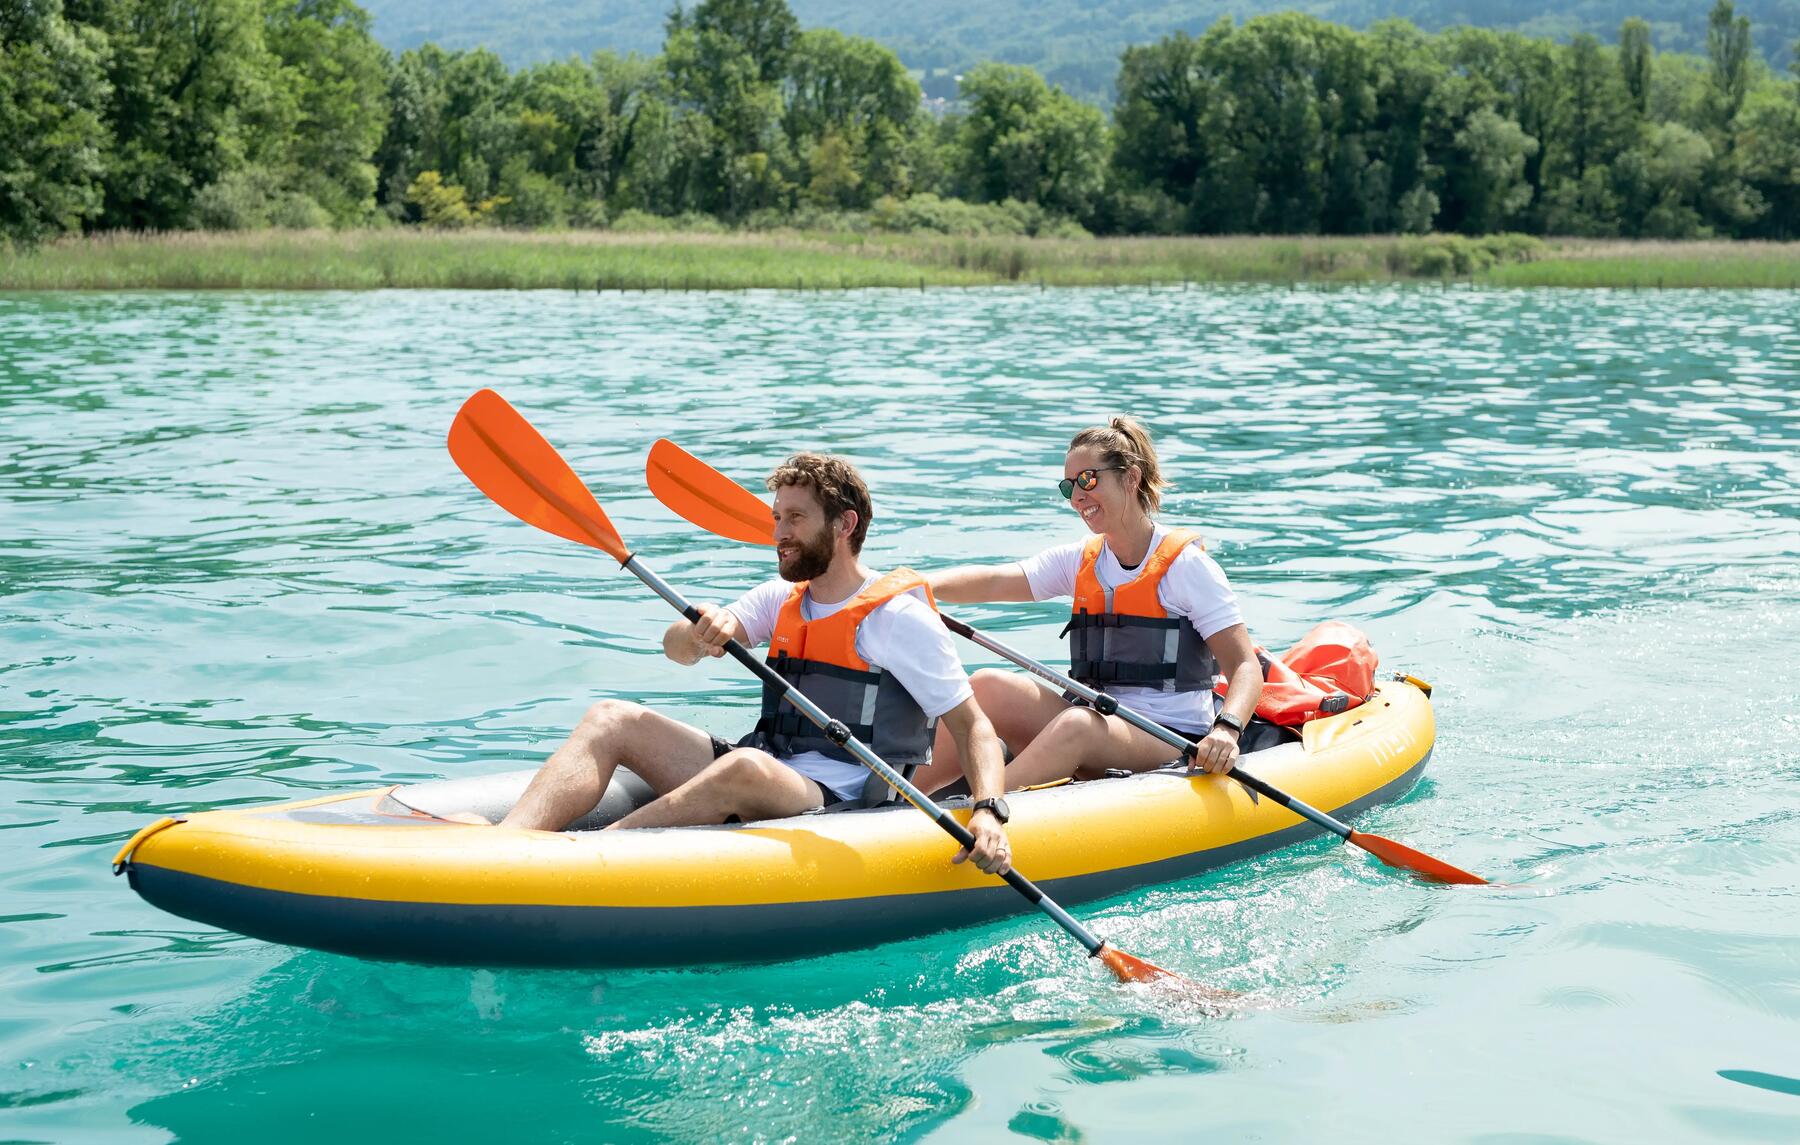 Les 5 meilleurs spots pour faire du kayak en Belgique 